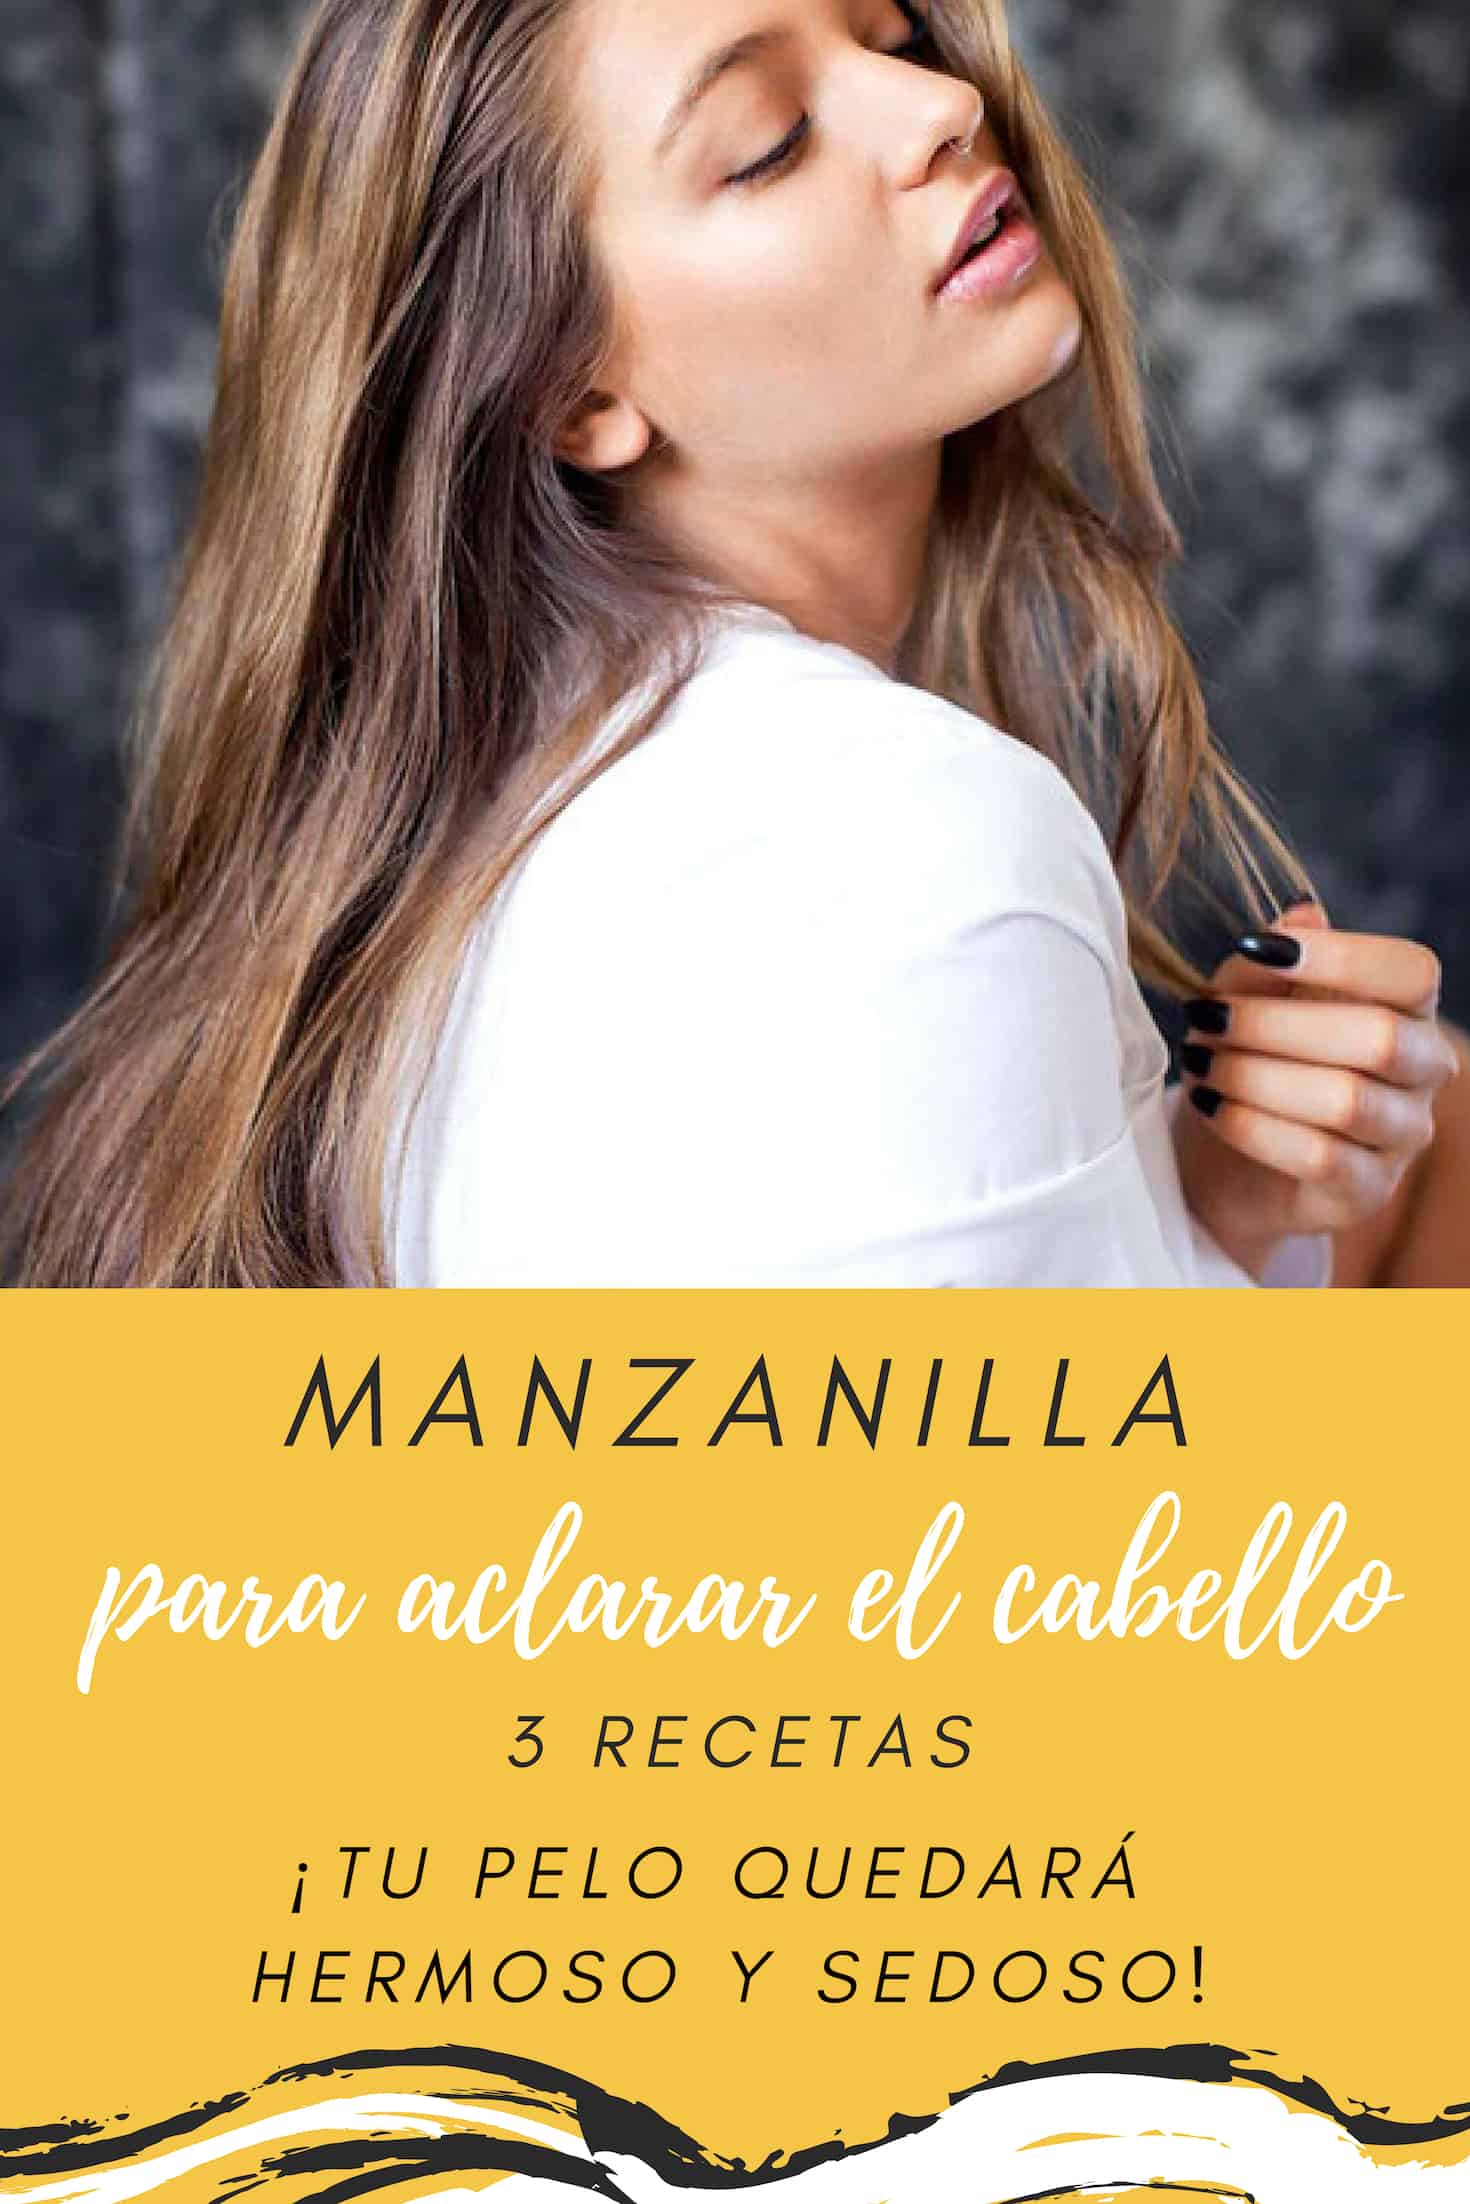 Como Usar Manzanilla Para Aclarar El Cabello 3 Recetas La Guia De Las Vitaminas